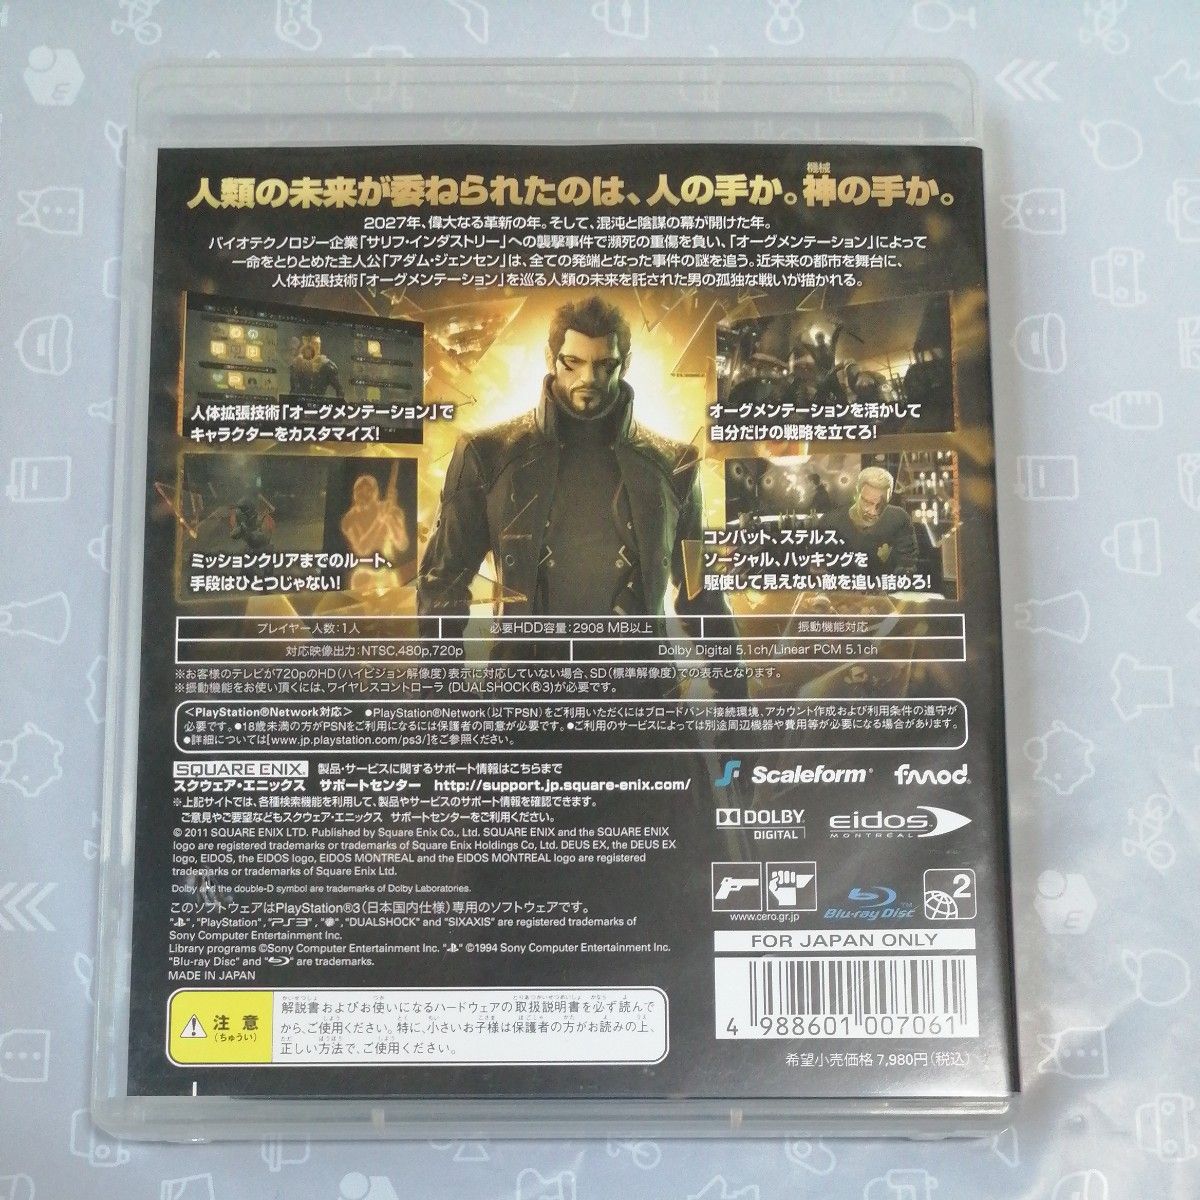 【PS3】 デウスエクス （Deus Ex）、ヴァンパイアレイン： アルタードスピーシーズ　2枚組